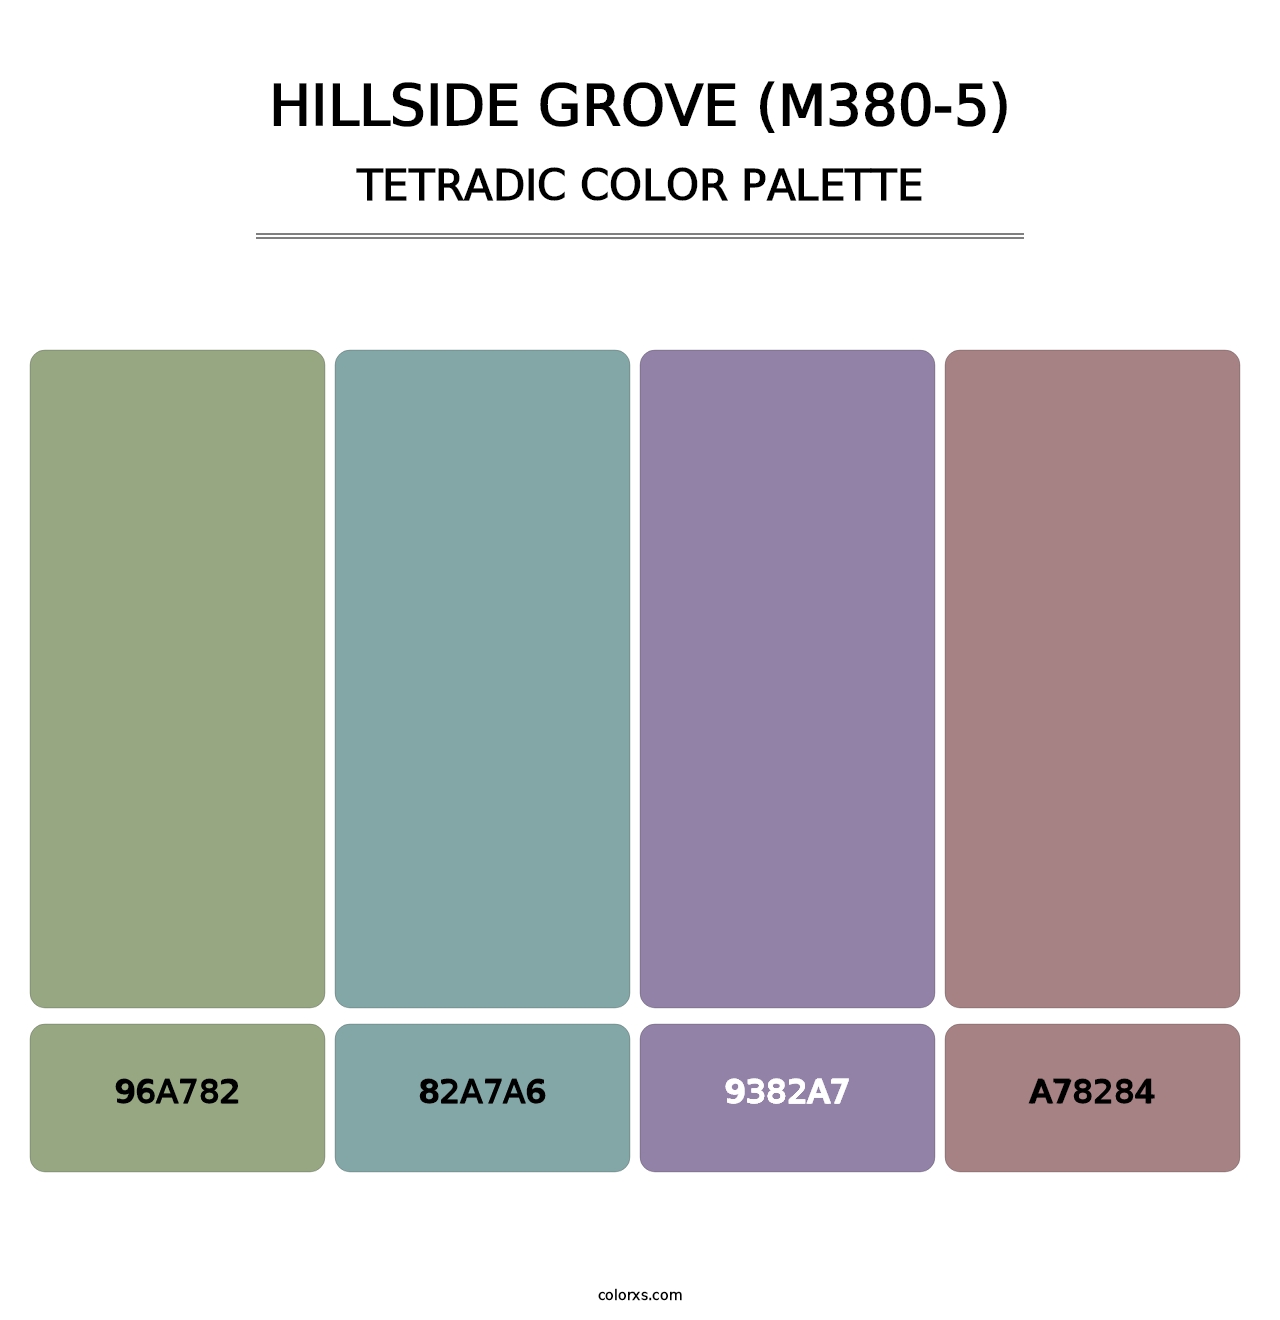 Hillside Grove (M380-5) - Tetradic Color Palette